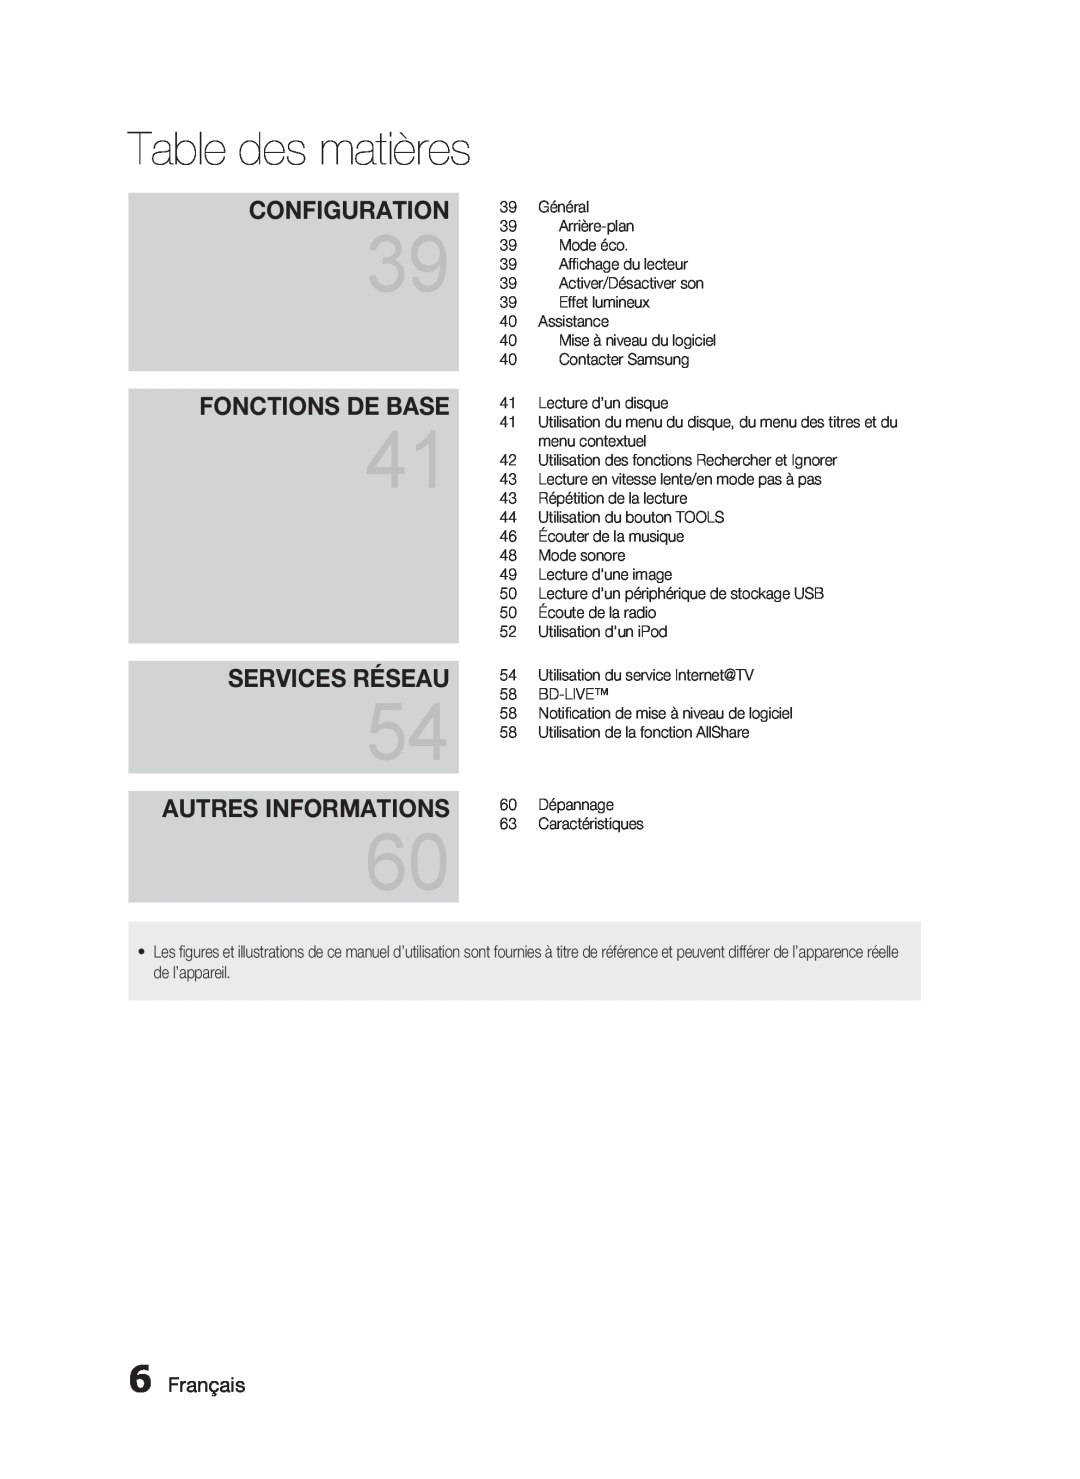 Samsung HT-C6200/XEF Services Réseau, Autres Informations, Fonctions De Base, Français, Table des matières, Configuration 